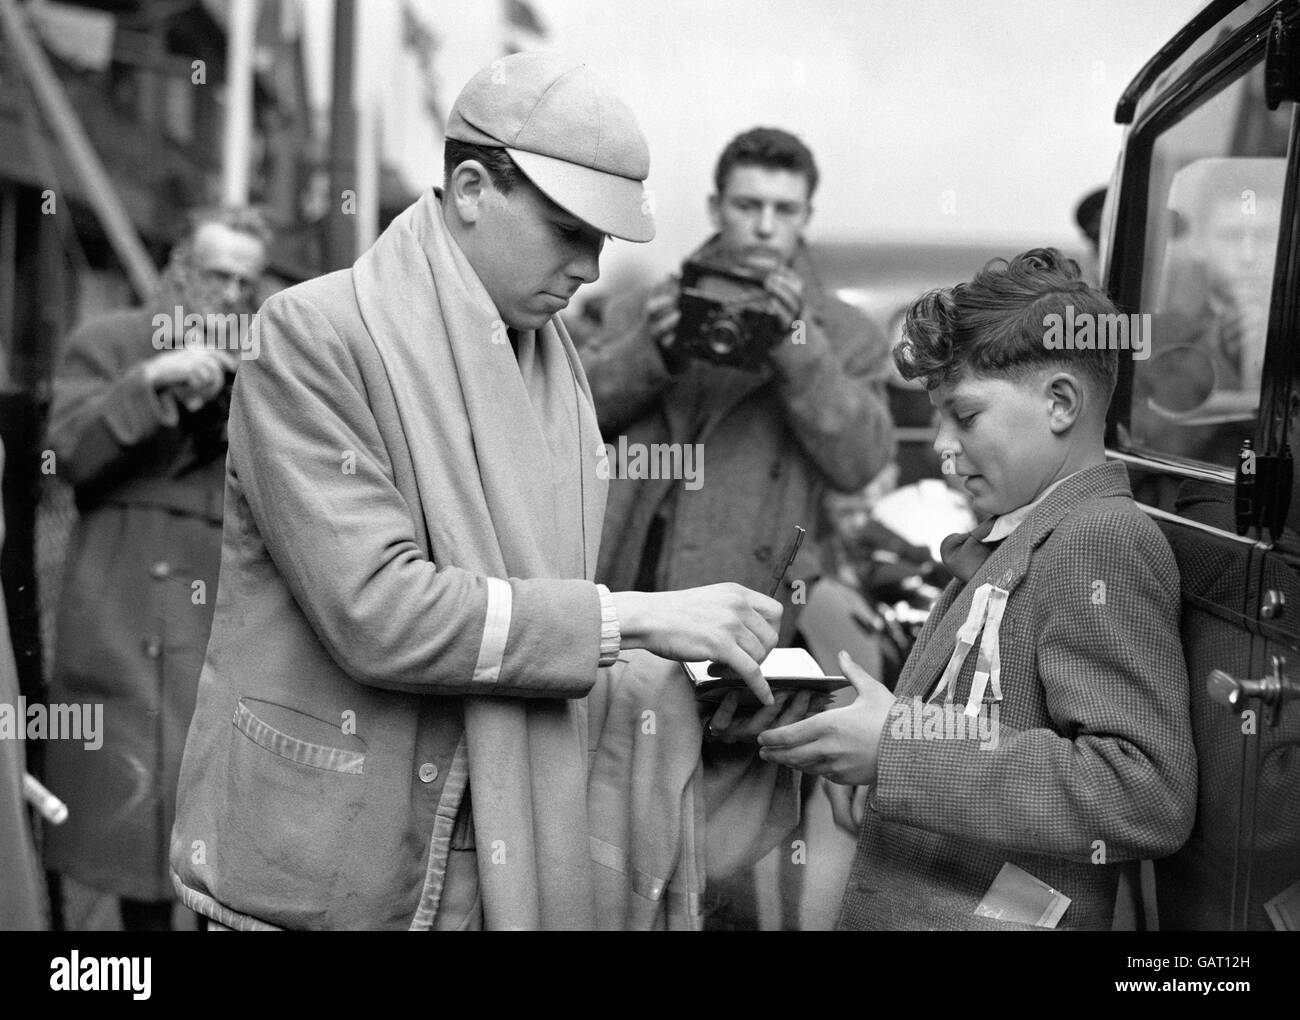 Antony Armstrong-Jones, il cui impegno nei confronti della principessa Margaret è stato appena annunciato, è stato raffigurato quando era Cox dell'equipaggio vincitore dell'Università di Cambridge nella Boat Race dell'aprile 1960. Foto Stock